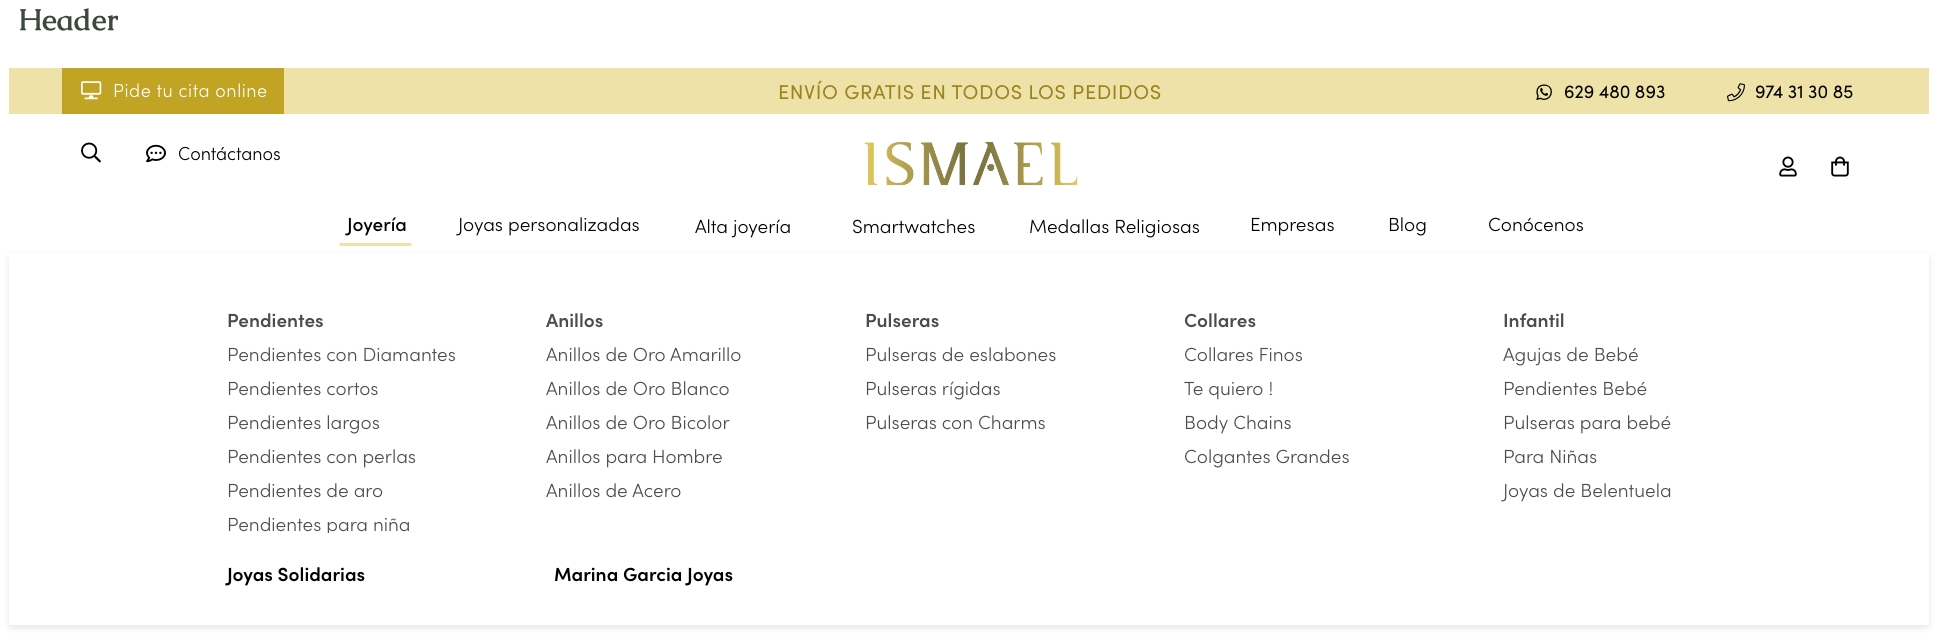 header Ismael Joyeros